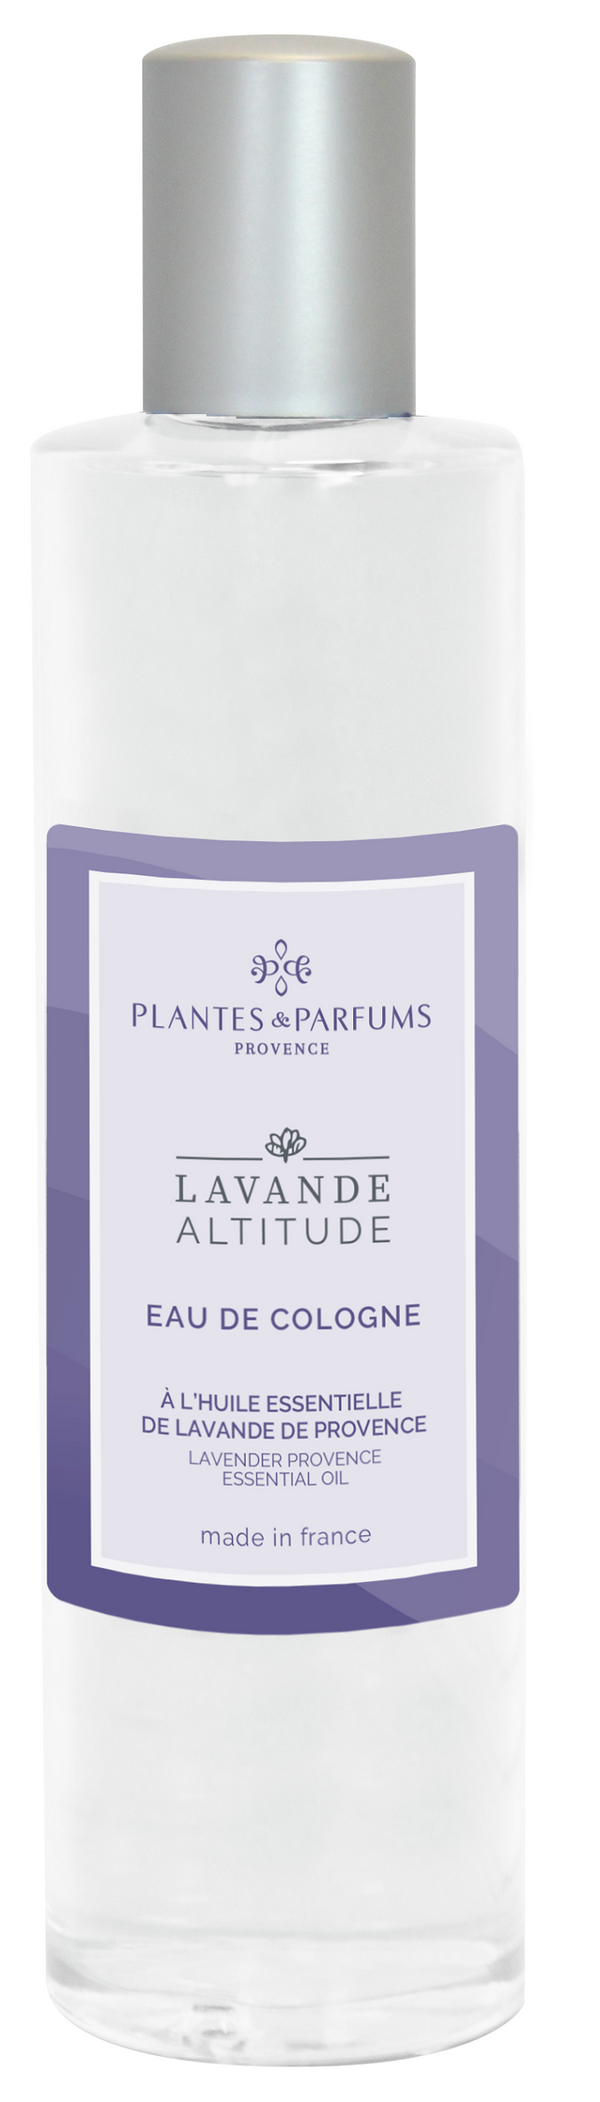 Eau de Cologne Lavendel 100 ml - Plantes & Parfums